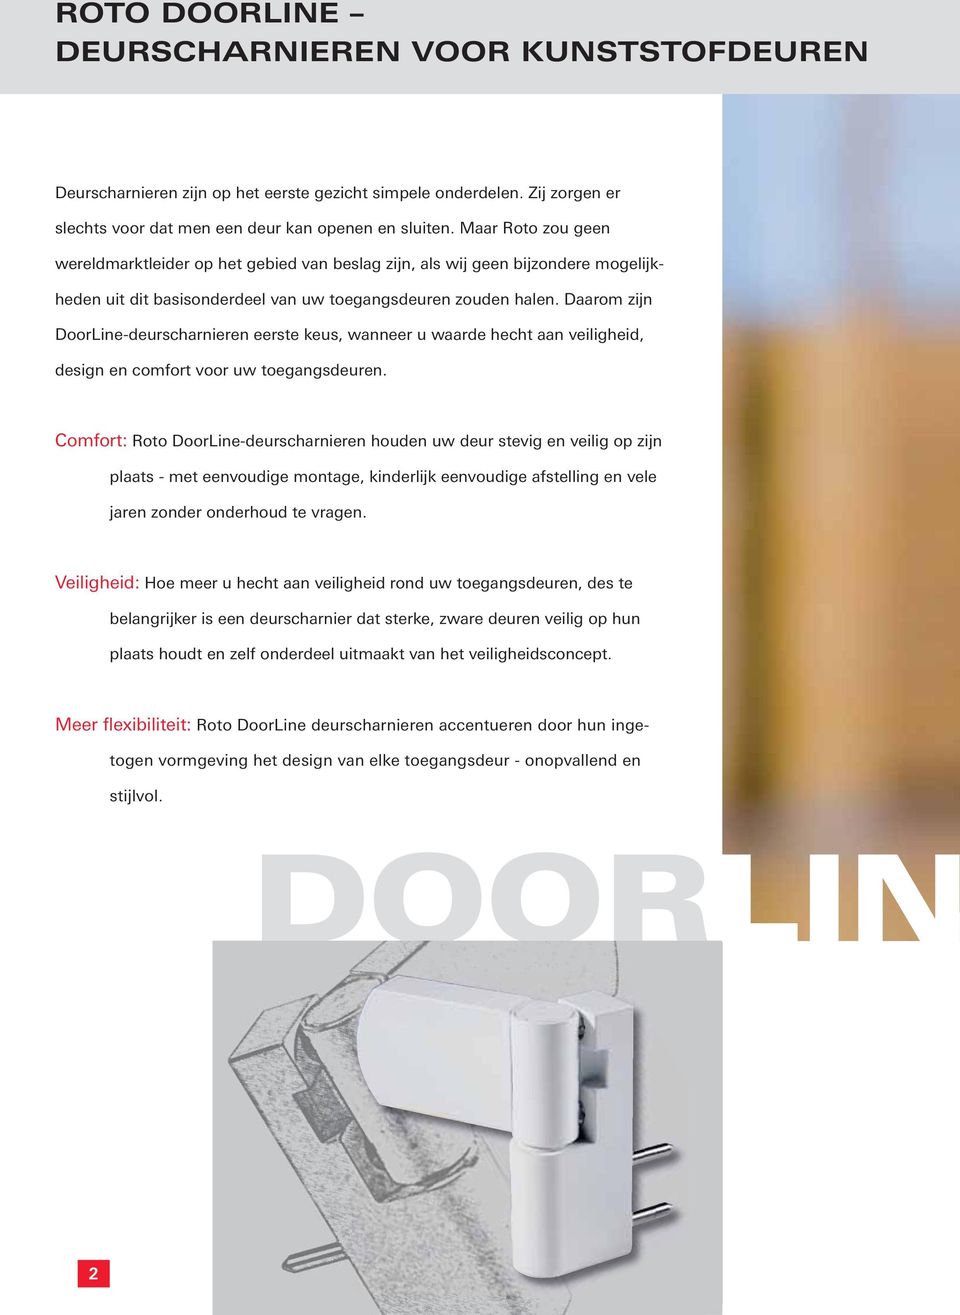 Daarom zijn DoorLine-deurscharnieren eerste keus, wanneer u waarde hecht aan veiligheid, design en comfort voor uw toegangsdeuren.